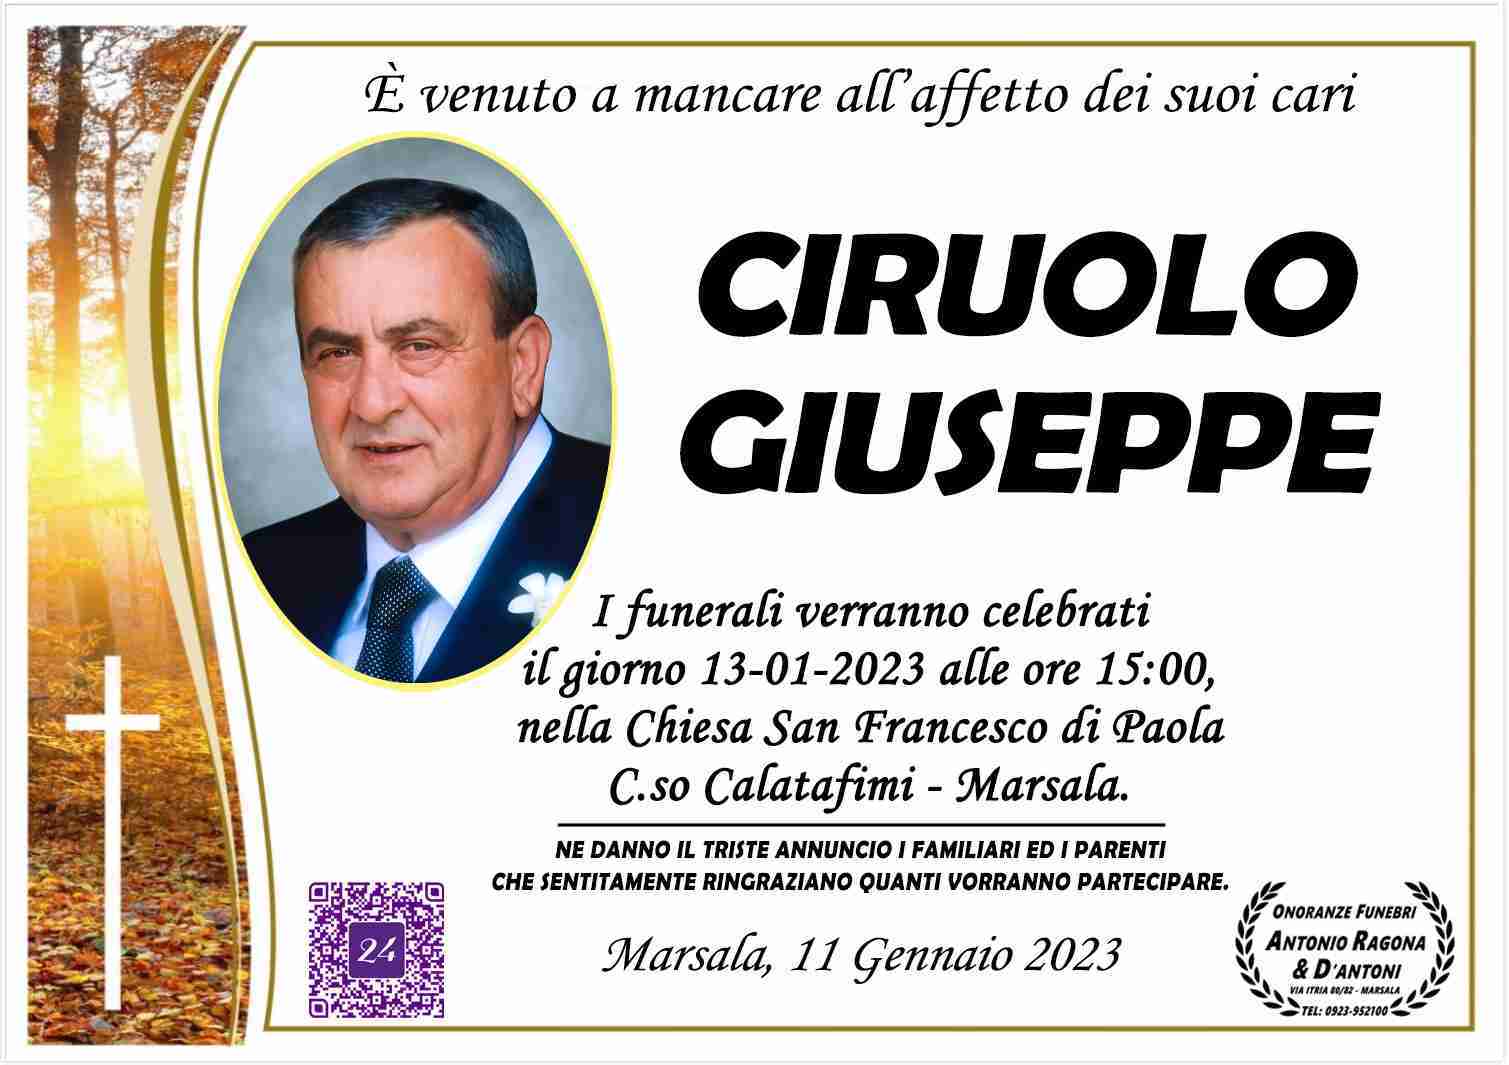 Giuseppe Ciruolo